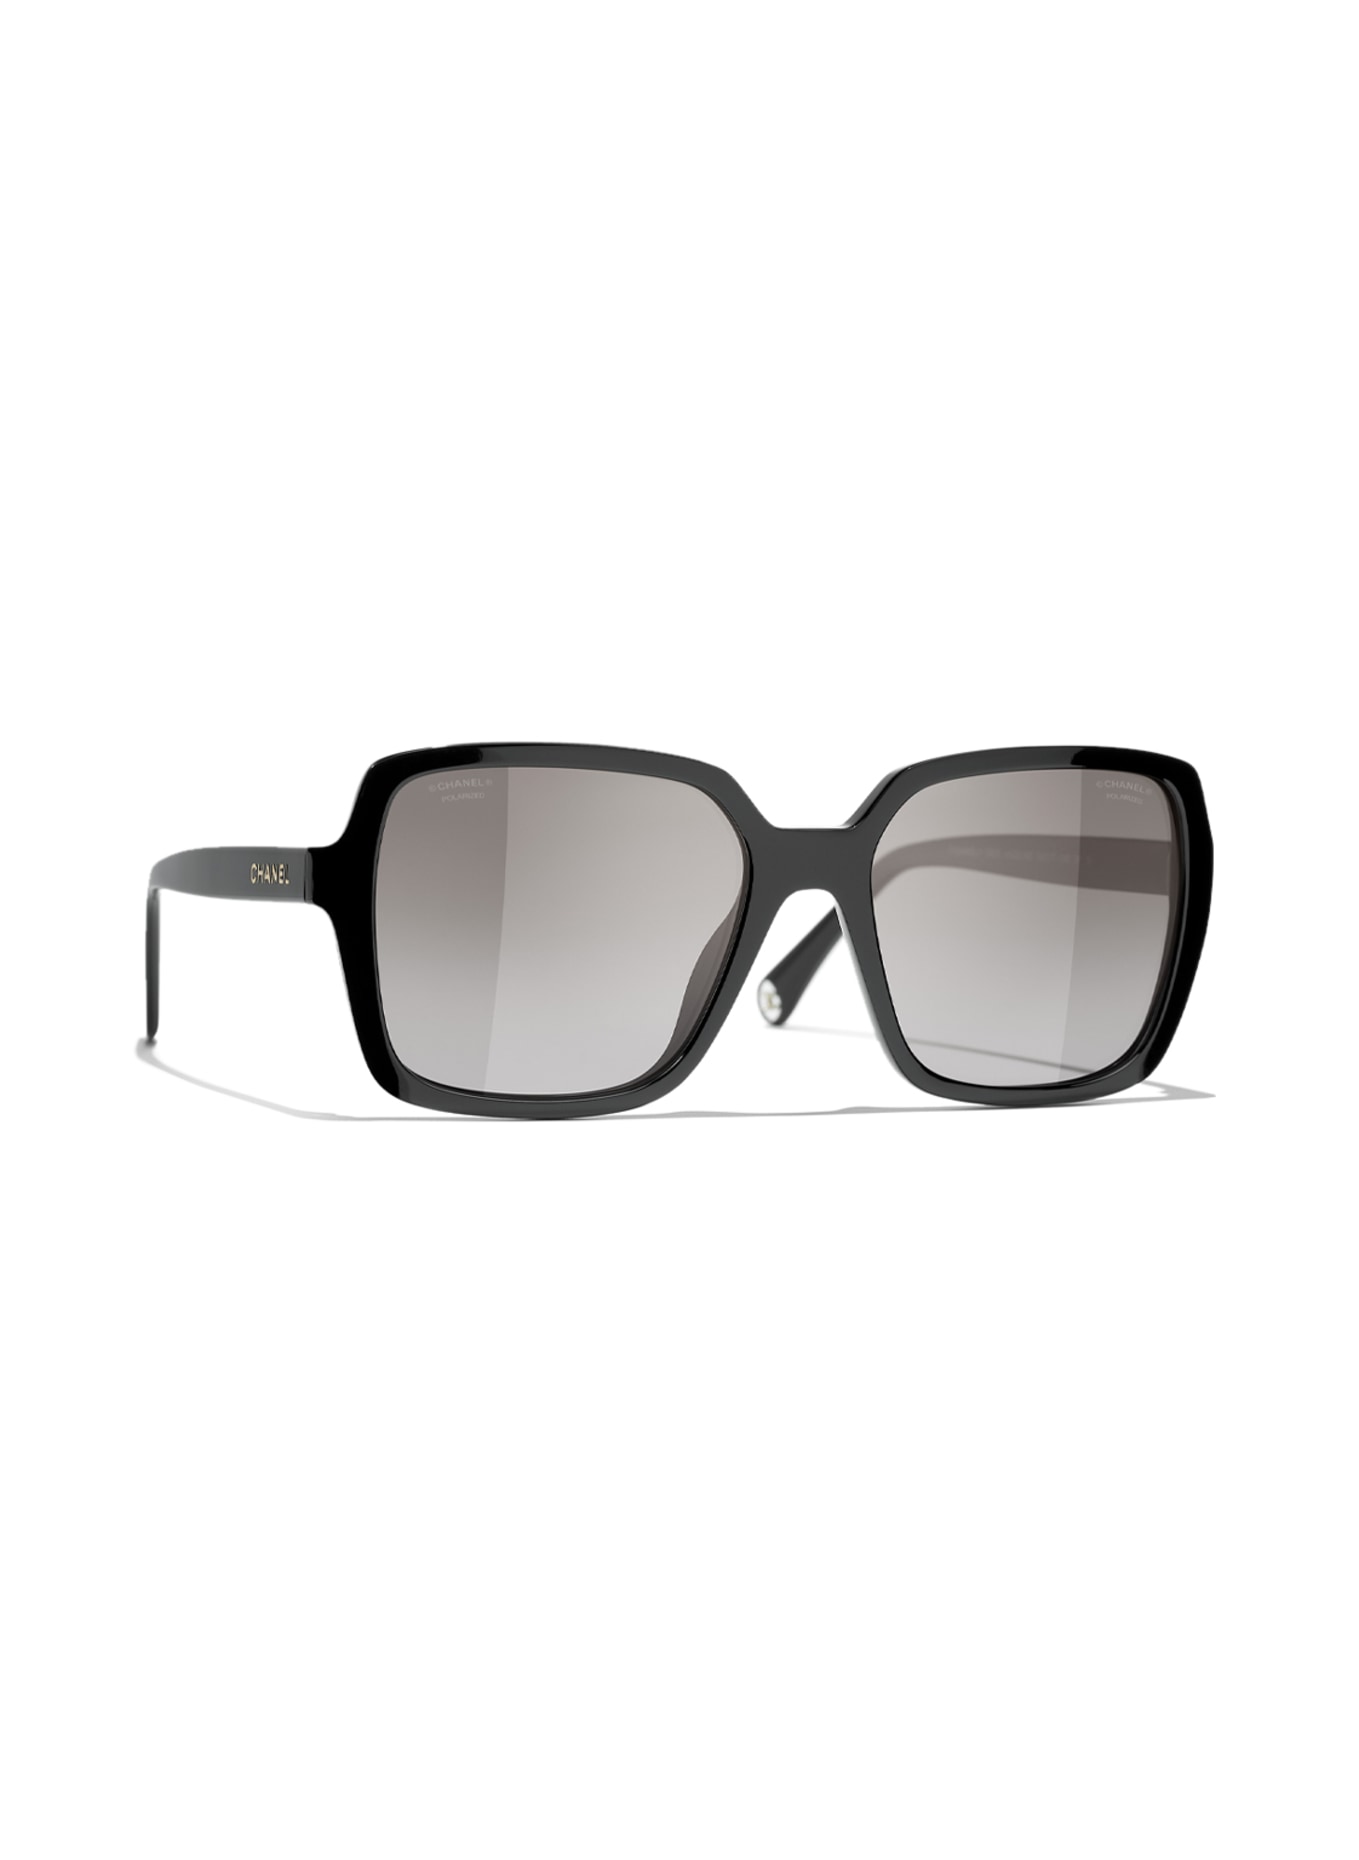 CHANEL Square sunglasses, Color: C622M3 - BLACK/GRAY POLARIZED (Image 1)